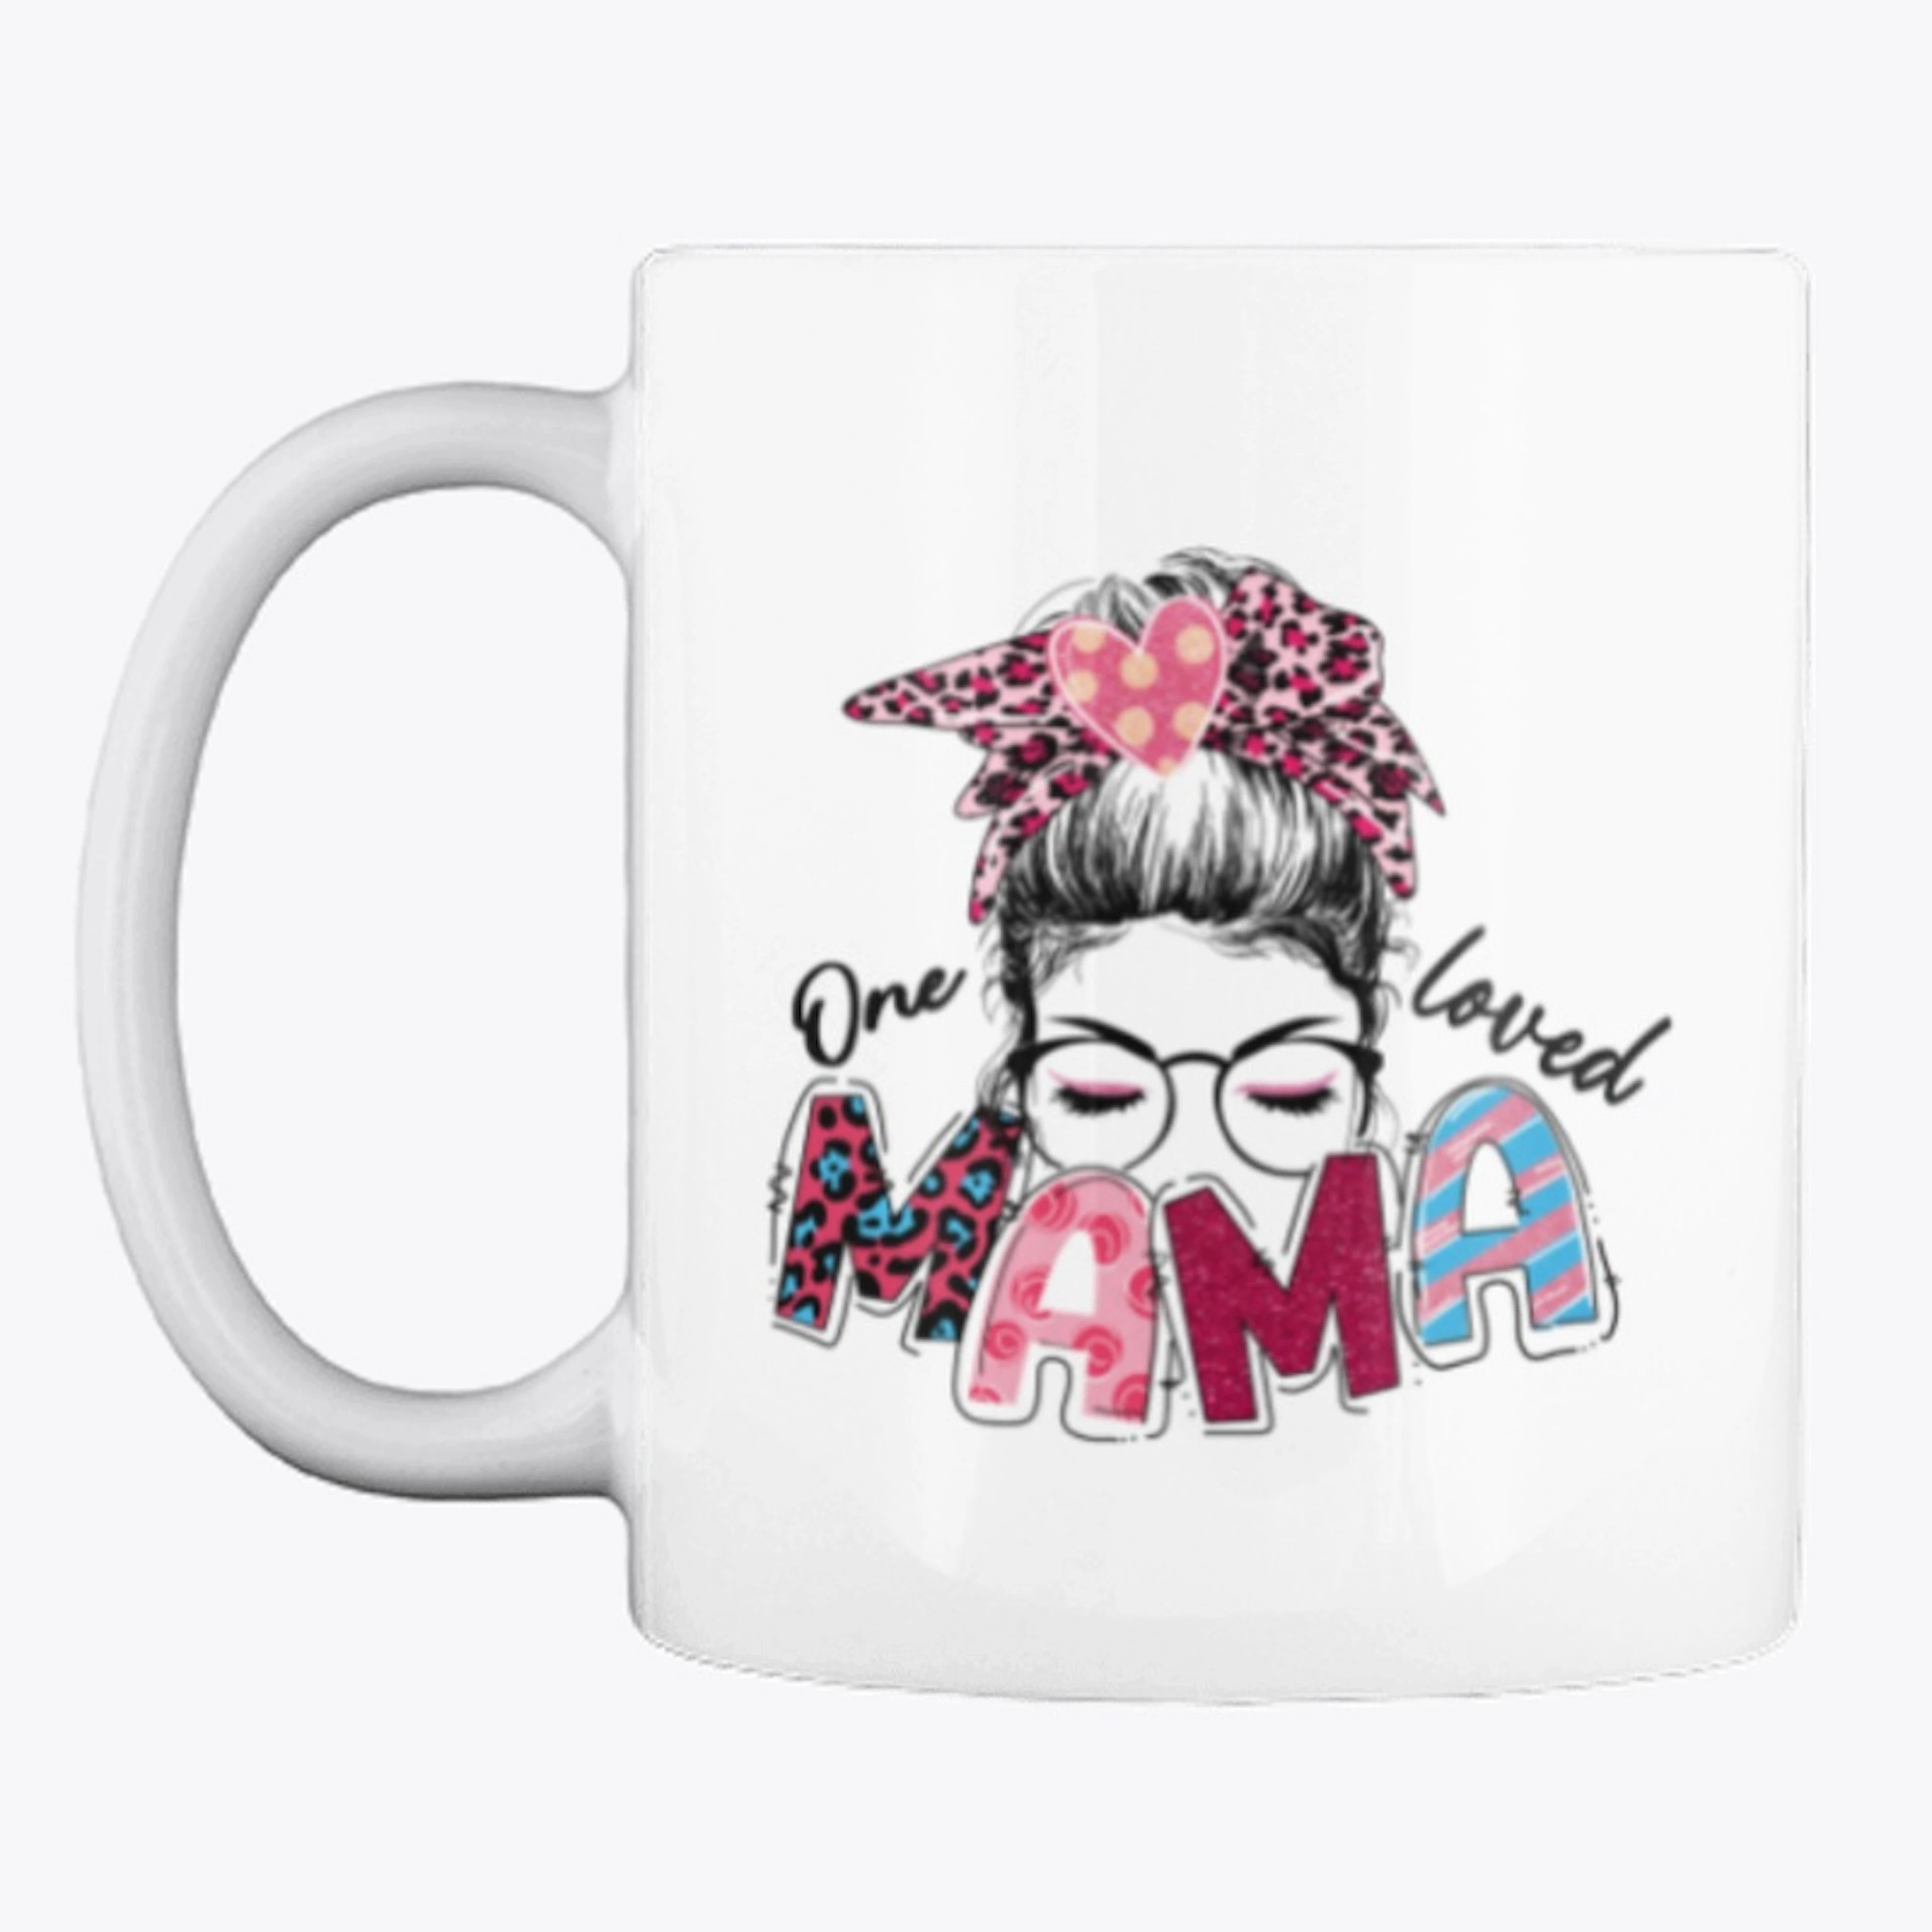 One Loved Mama Coffee Mug